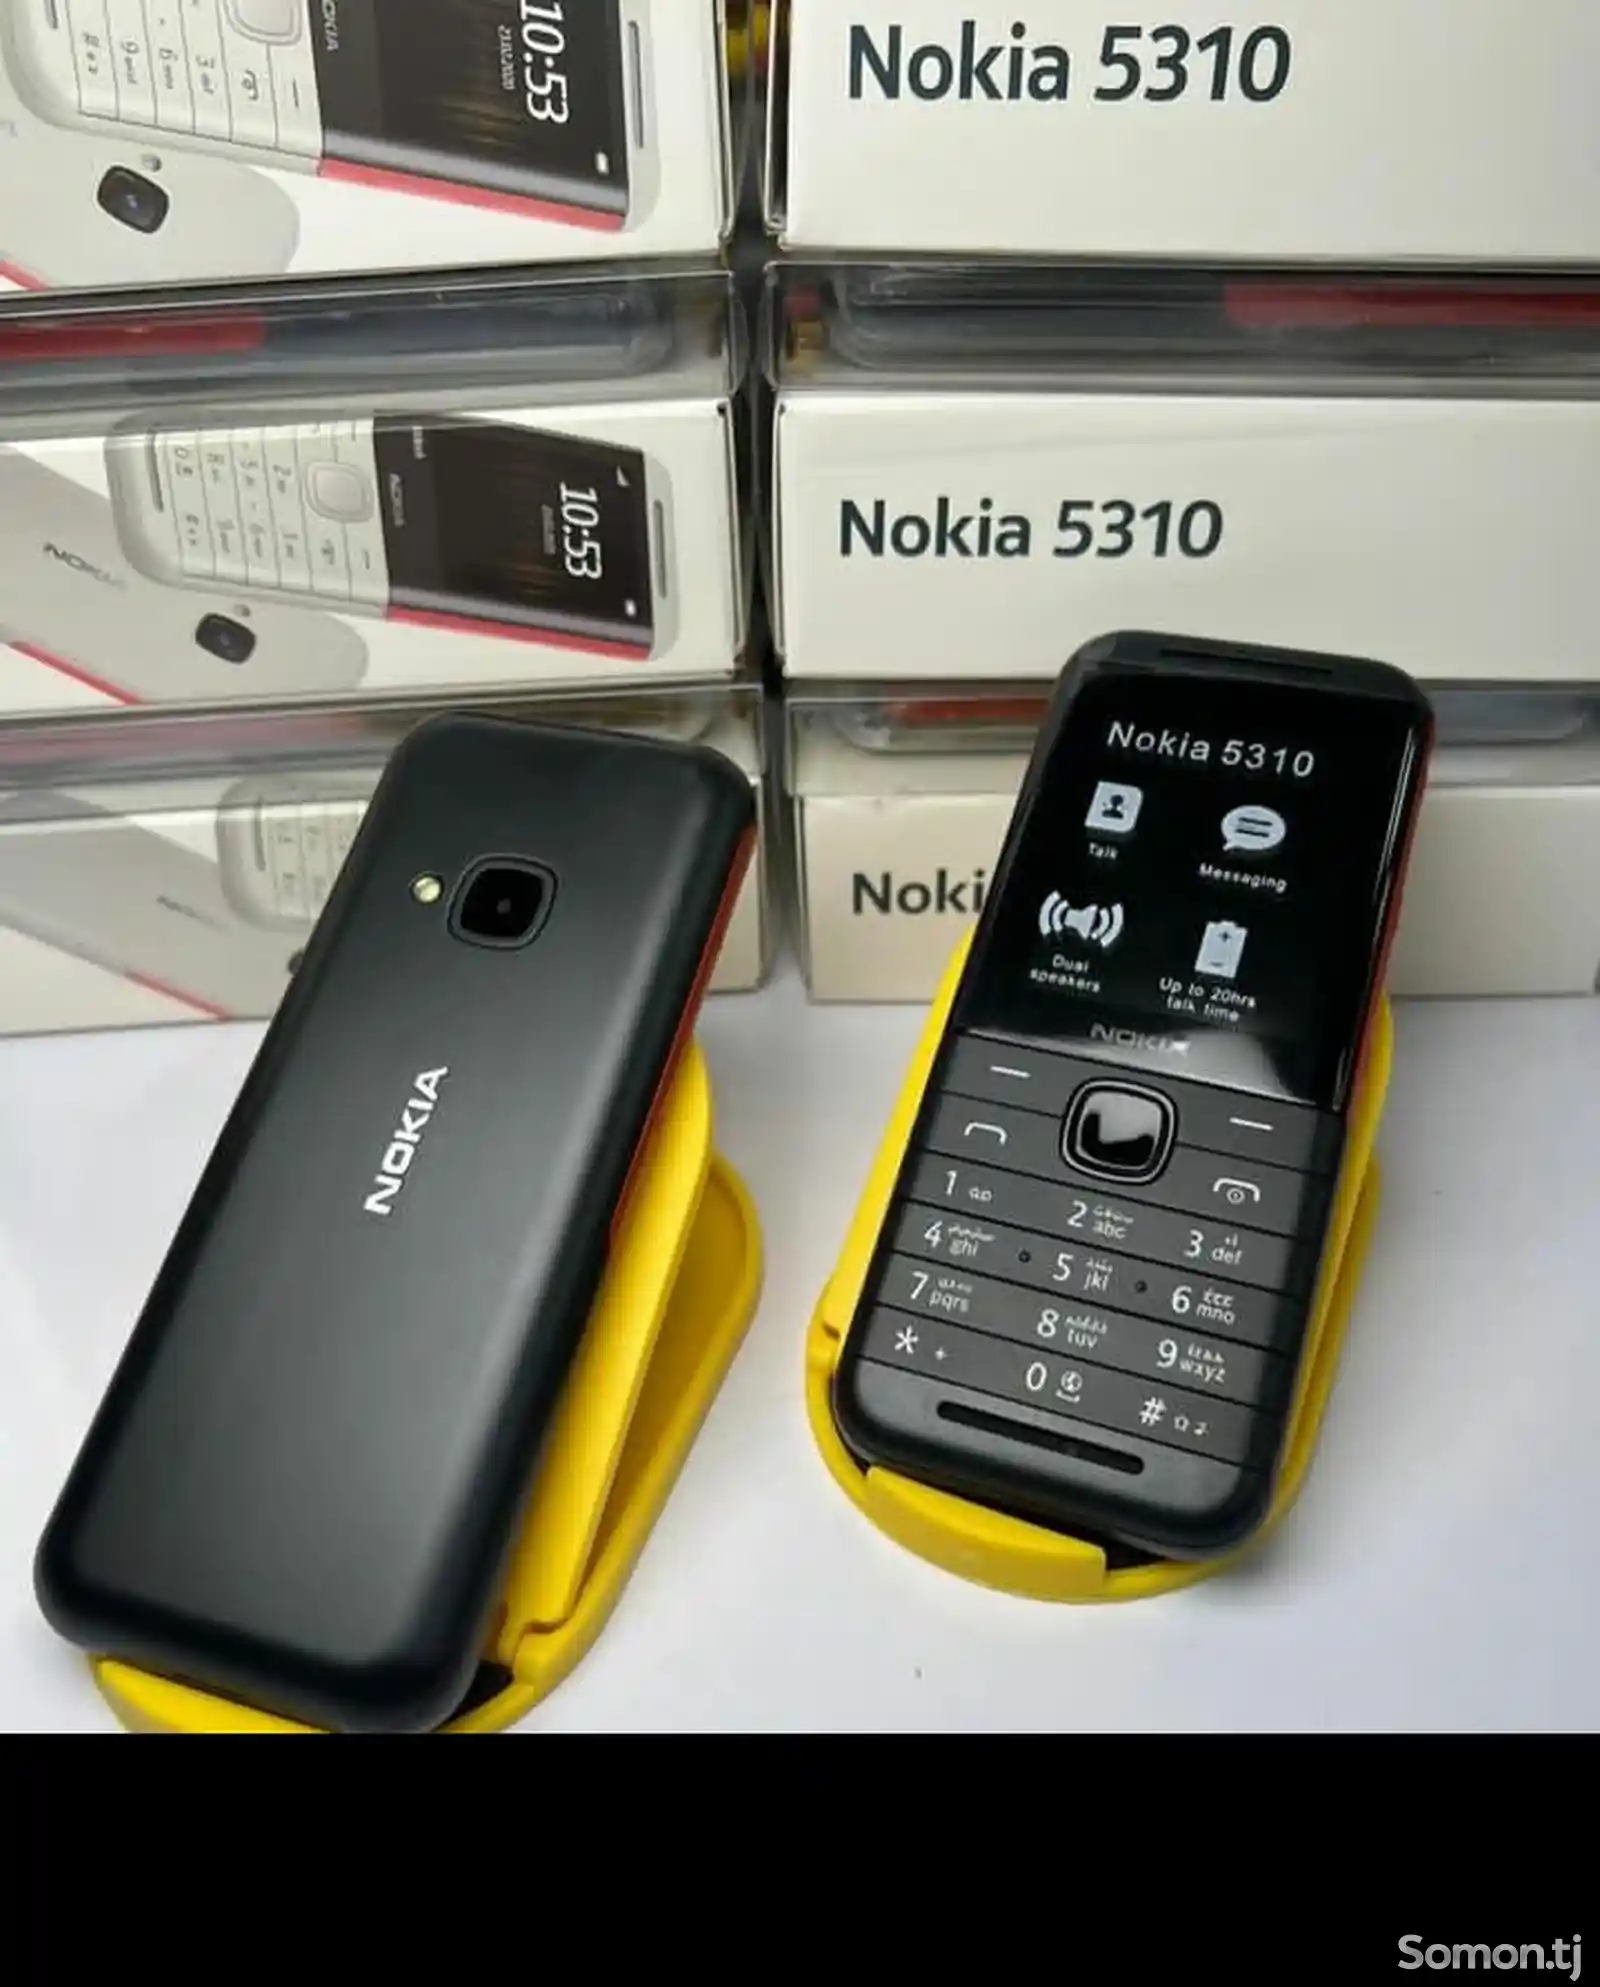 Nokia 5310 duos